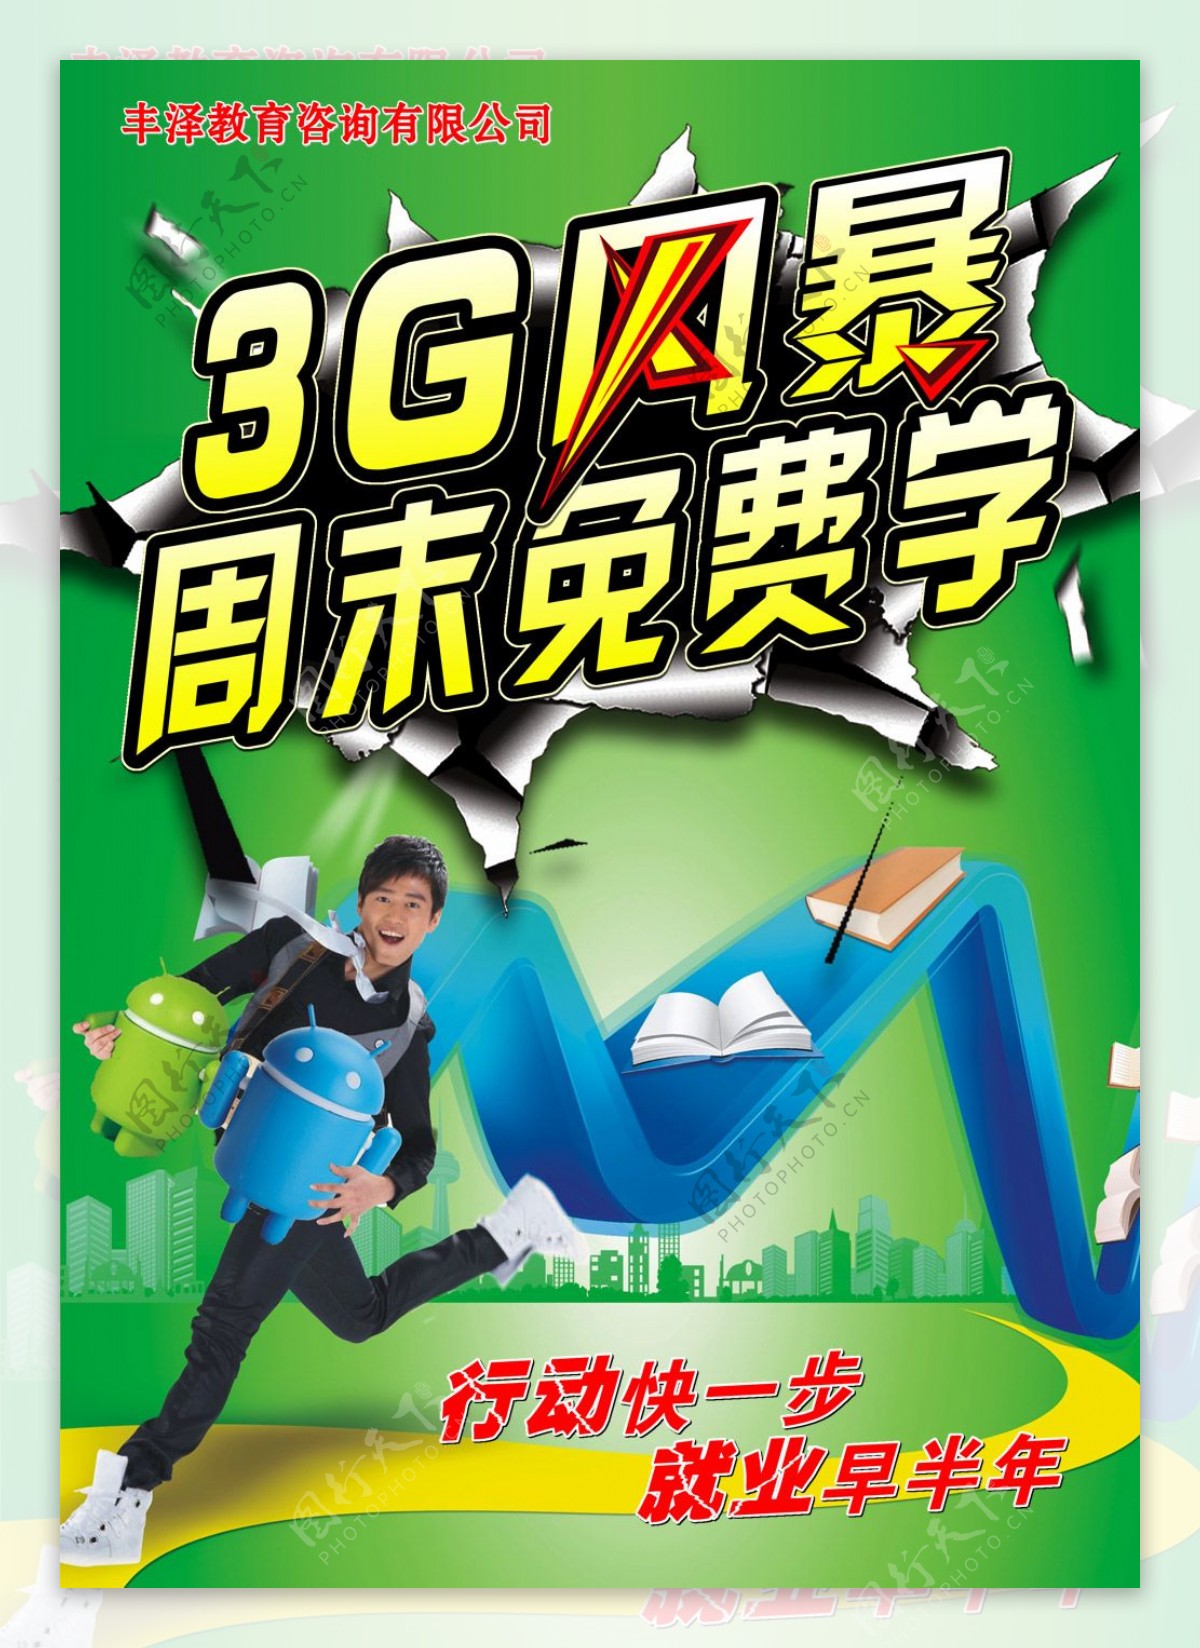 3G风暴教育机构海报PSD分层